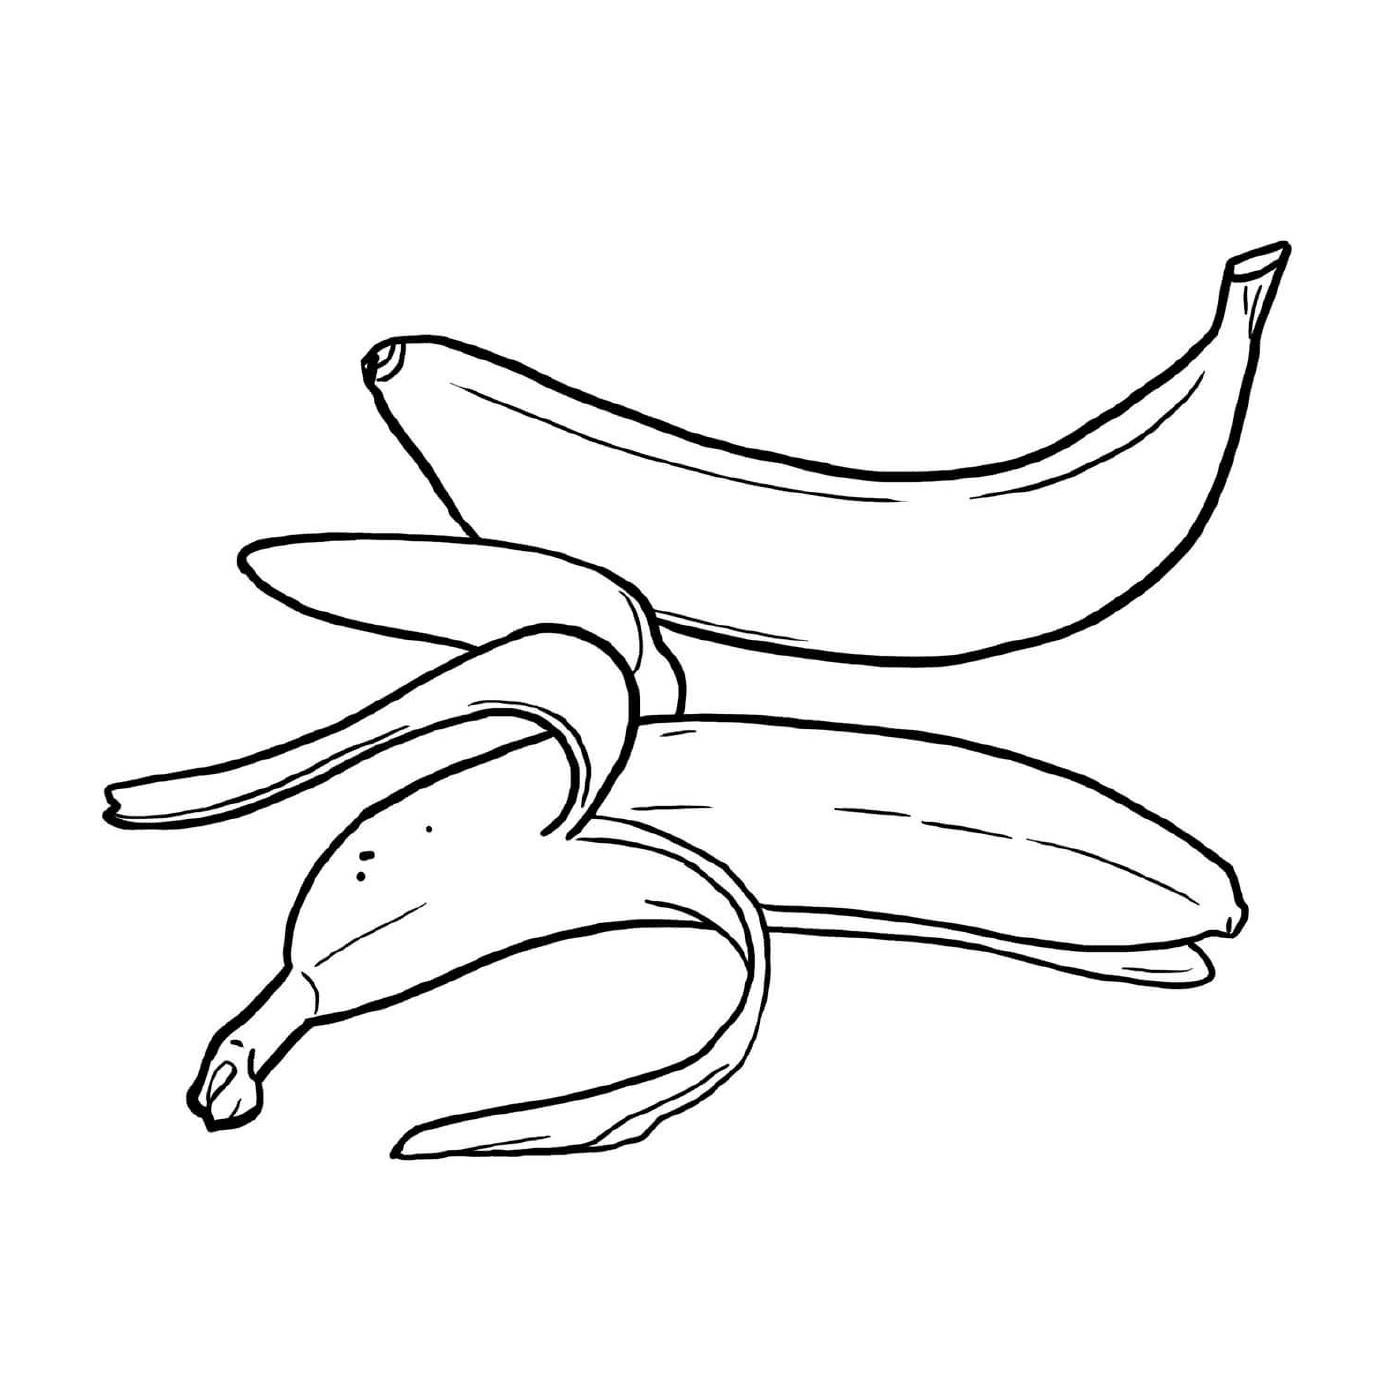  Mehrere Bananen auf einem Tisch 